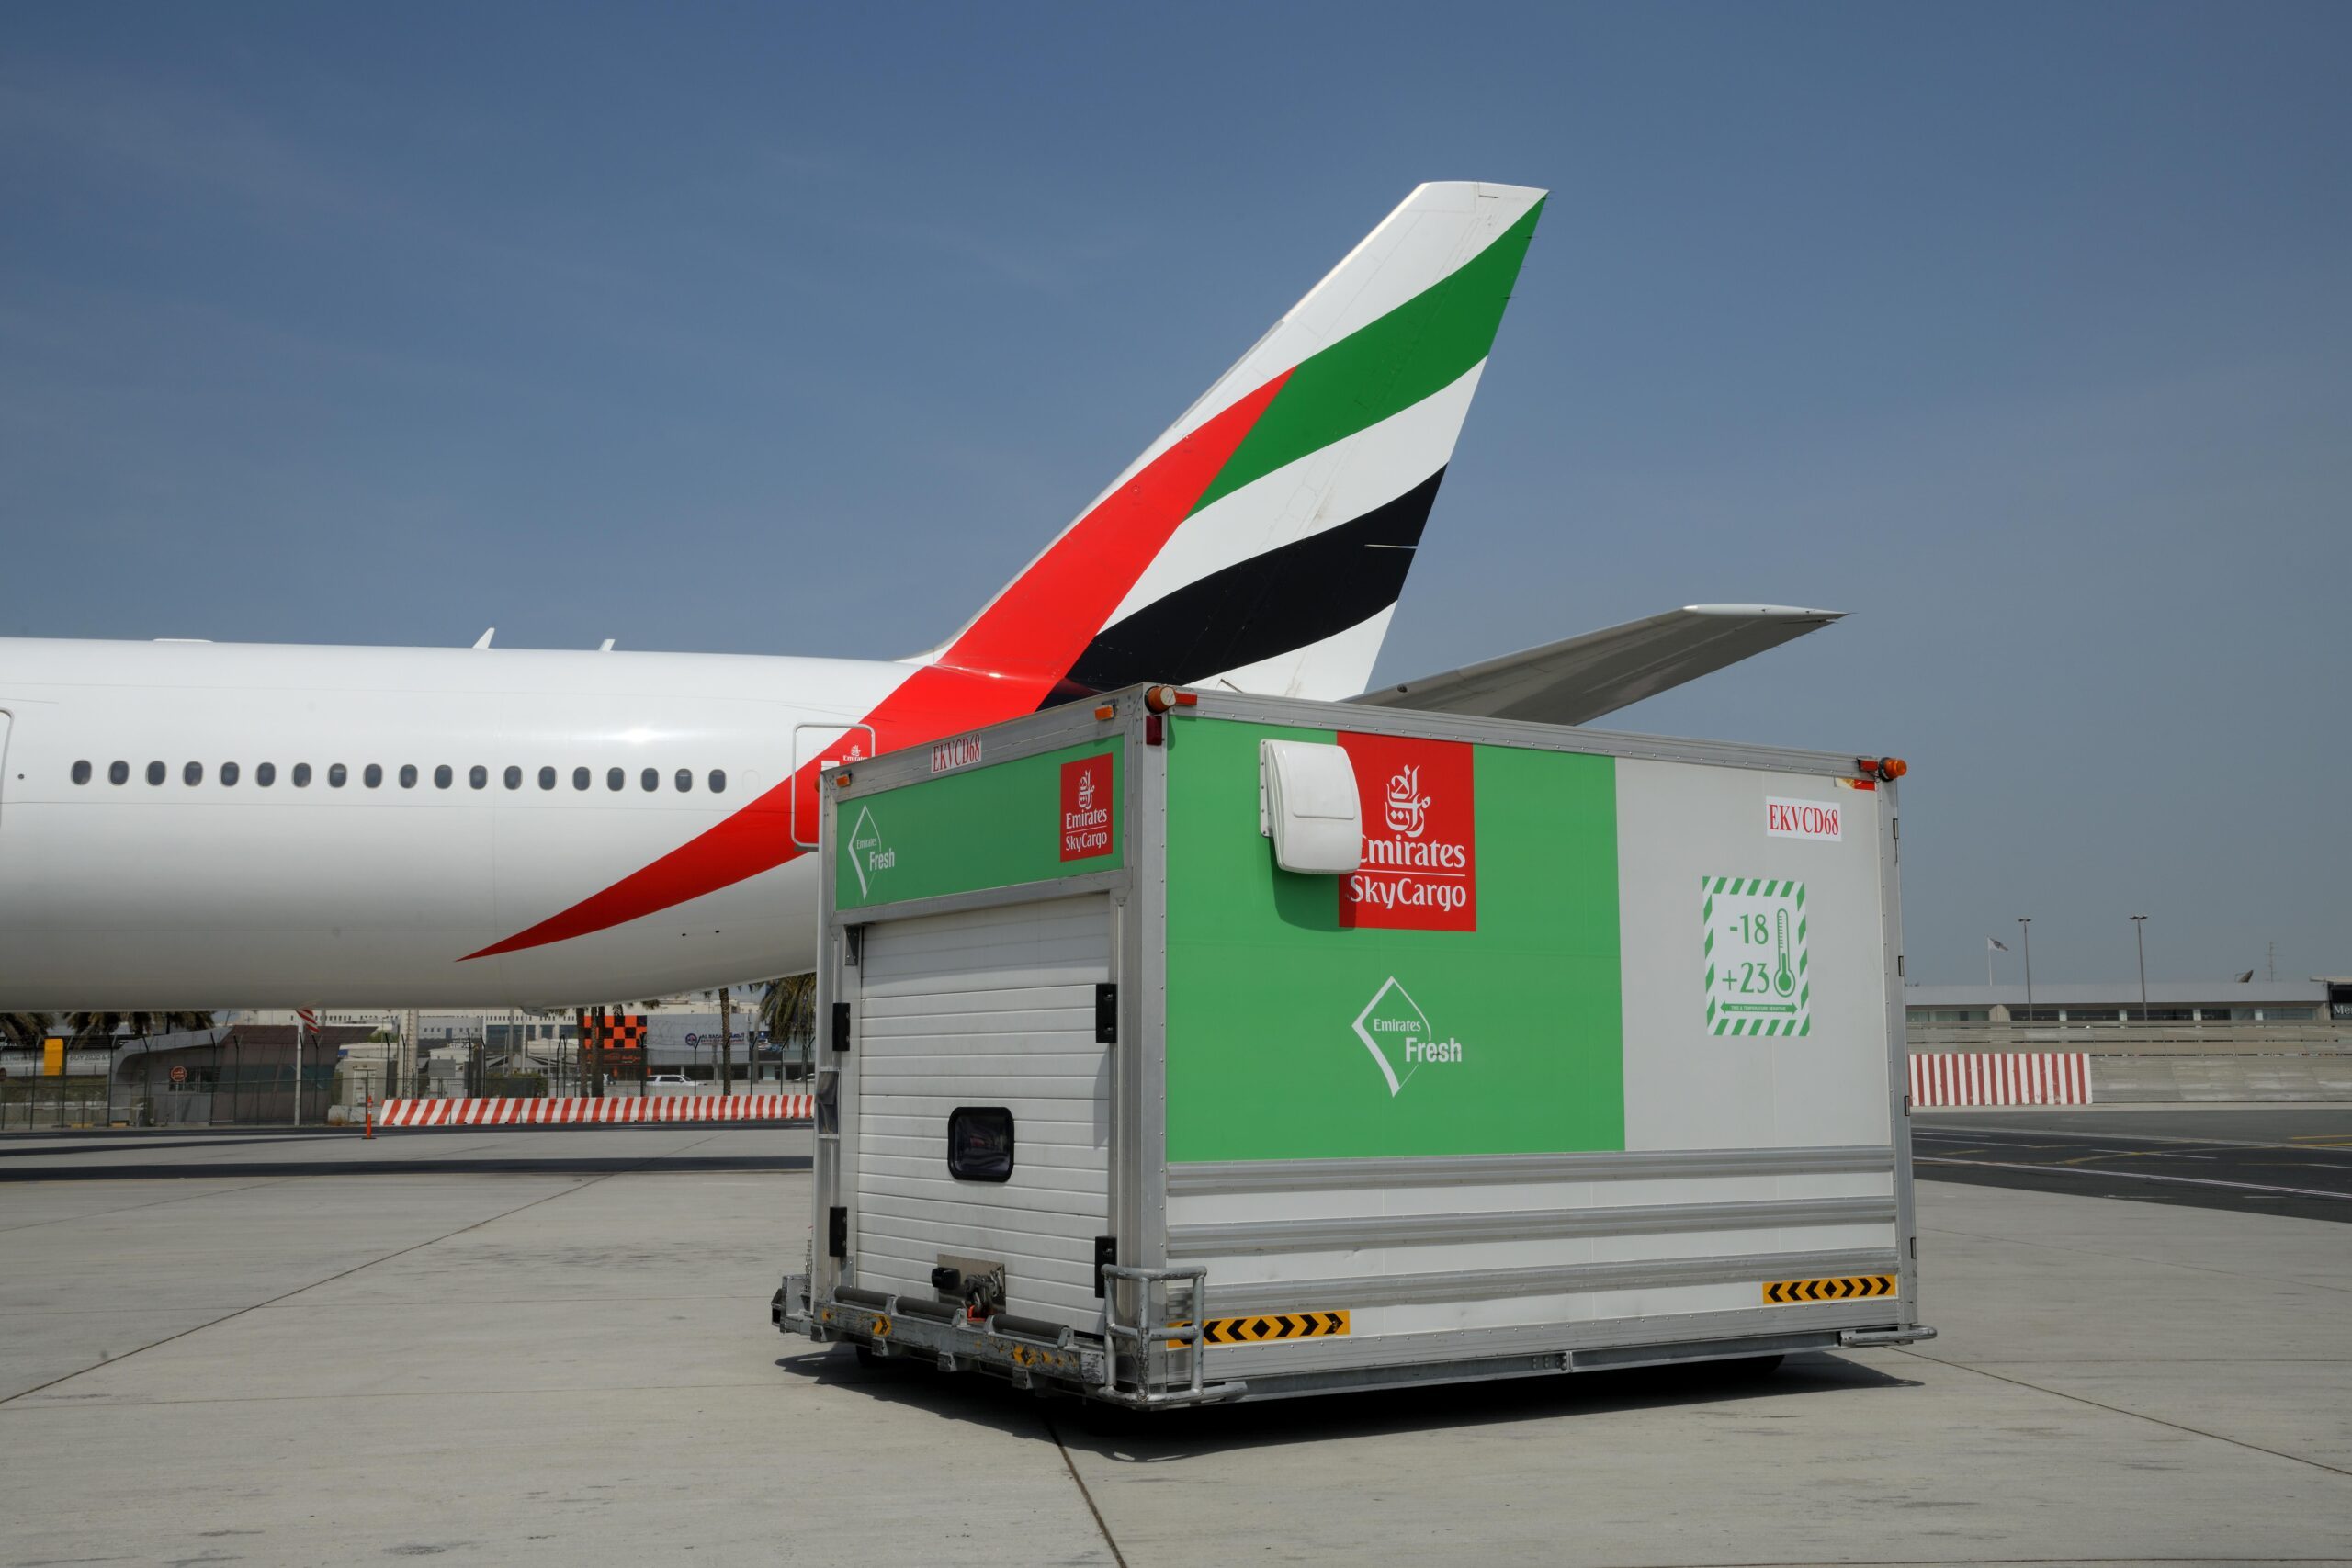 Terminal, Airport, Aircraft Emirates